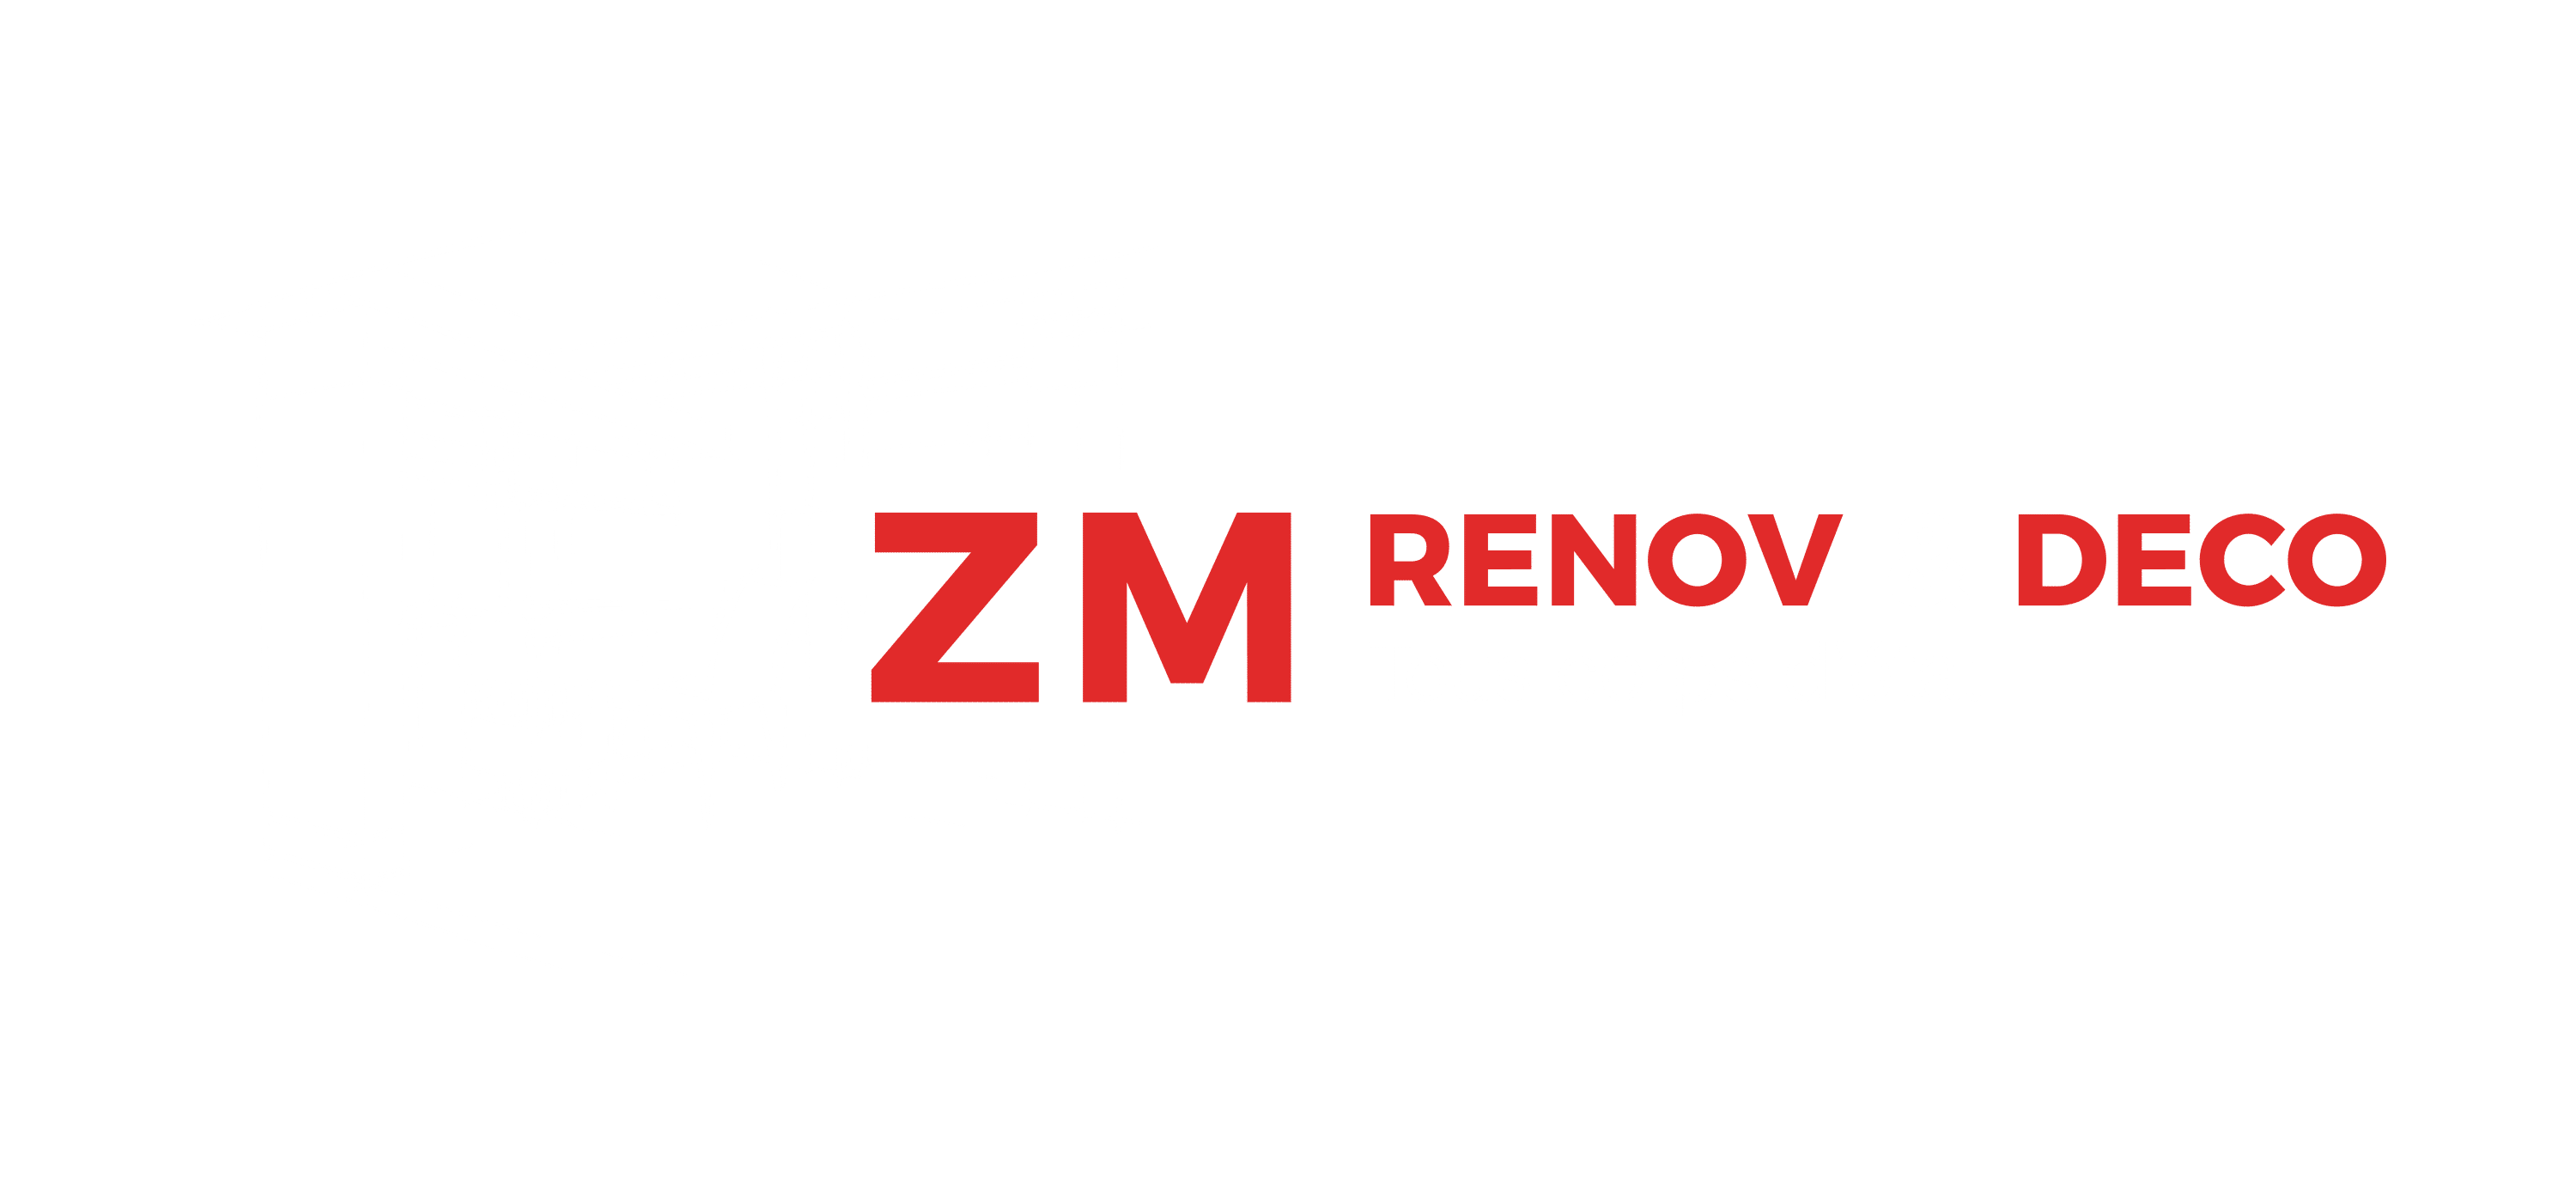 logo zm rénov et deco entreprise du batiment tout corps d'état renovation complète